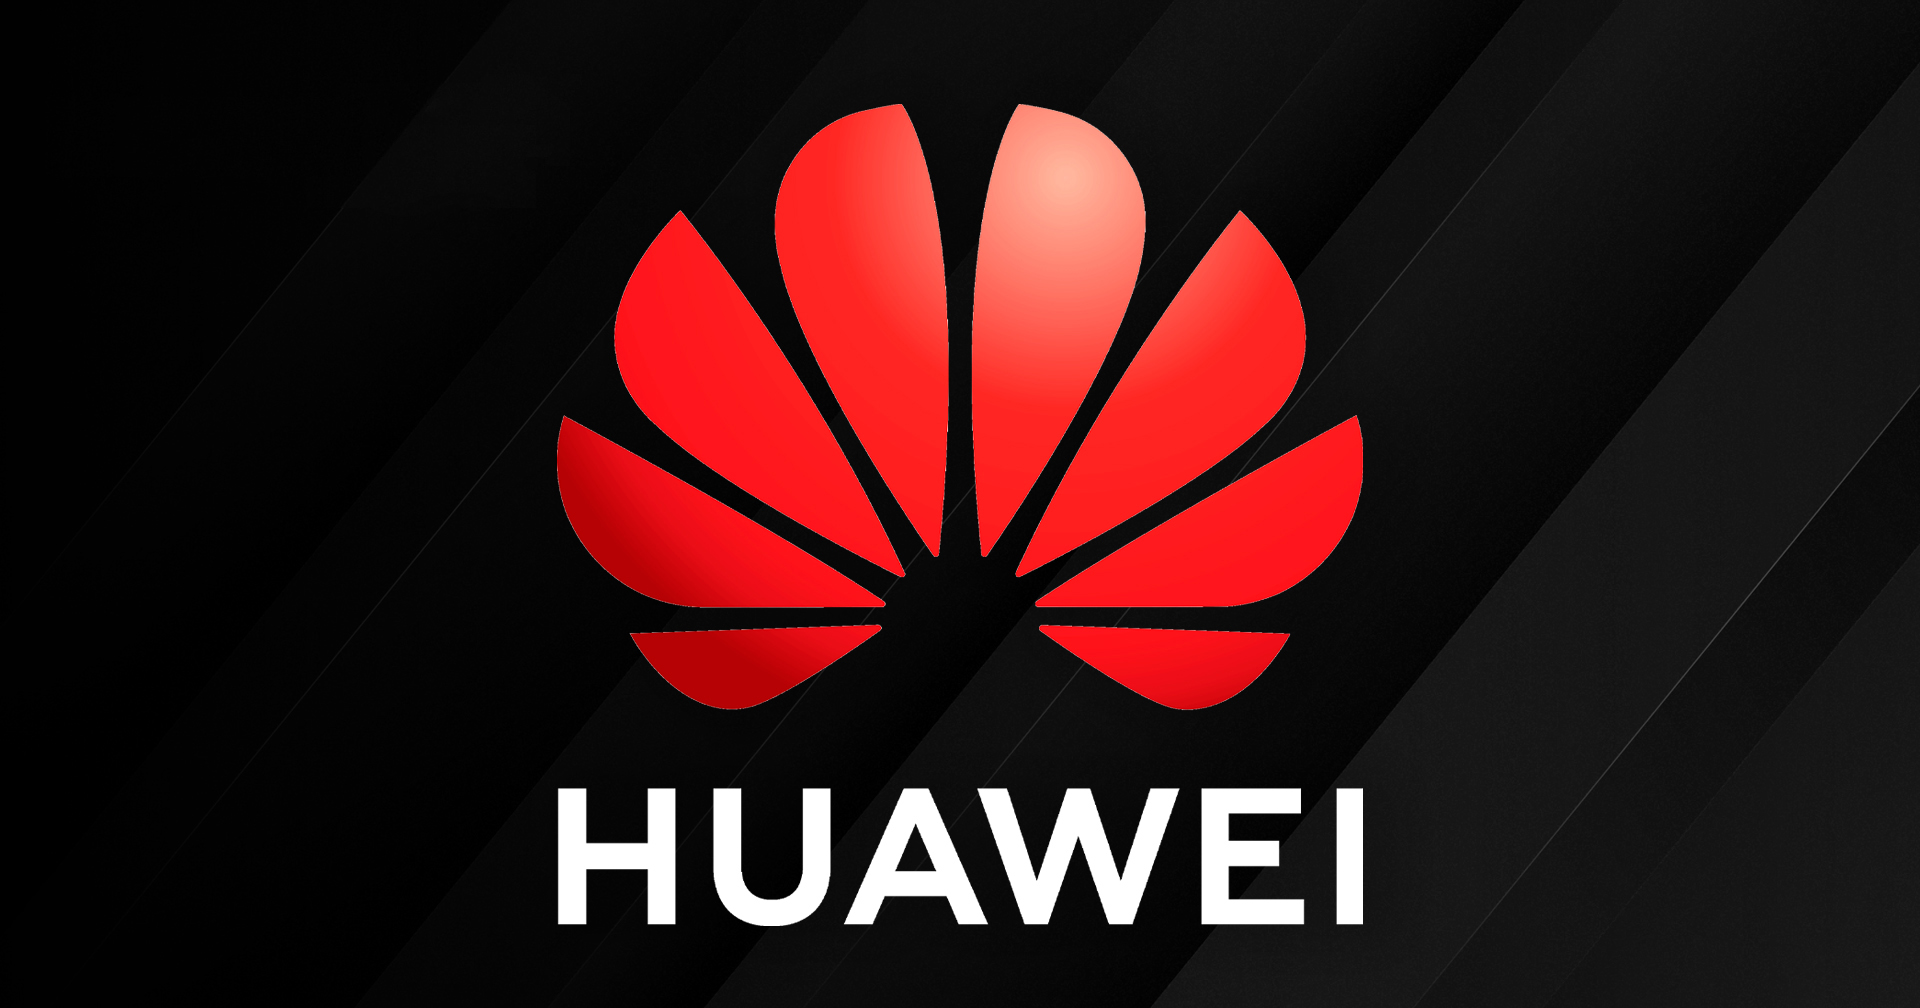 การเปลี่ยนอุปกรณ์ Huawei และ ZTE ในสหรัฐฯ งบบาน 1.8 แสนล้านบาท